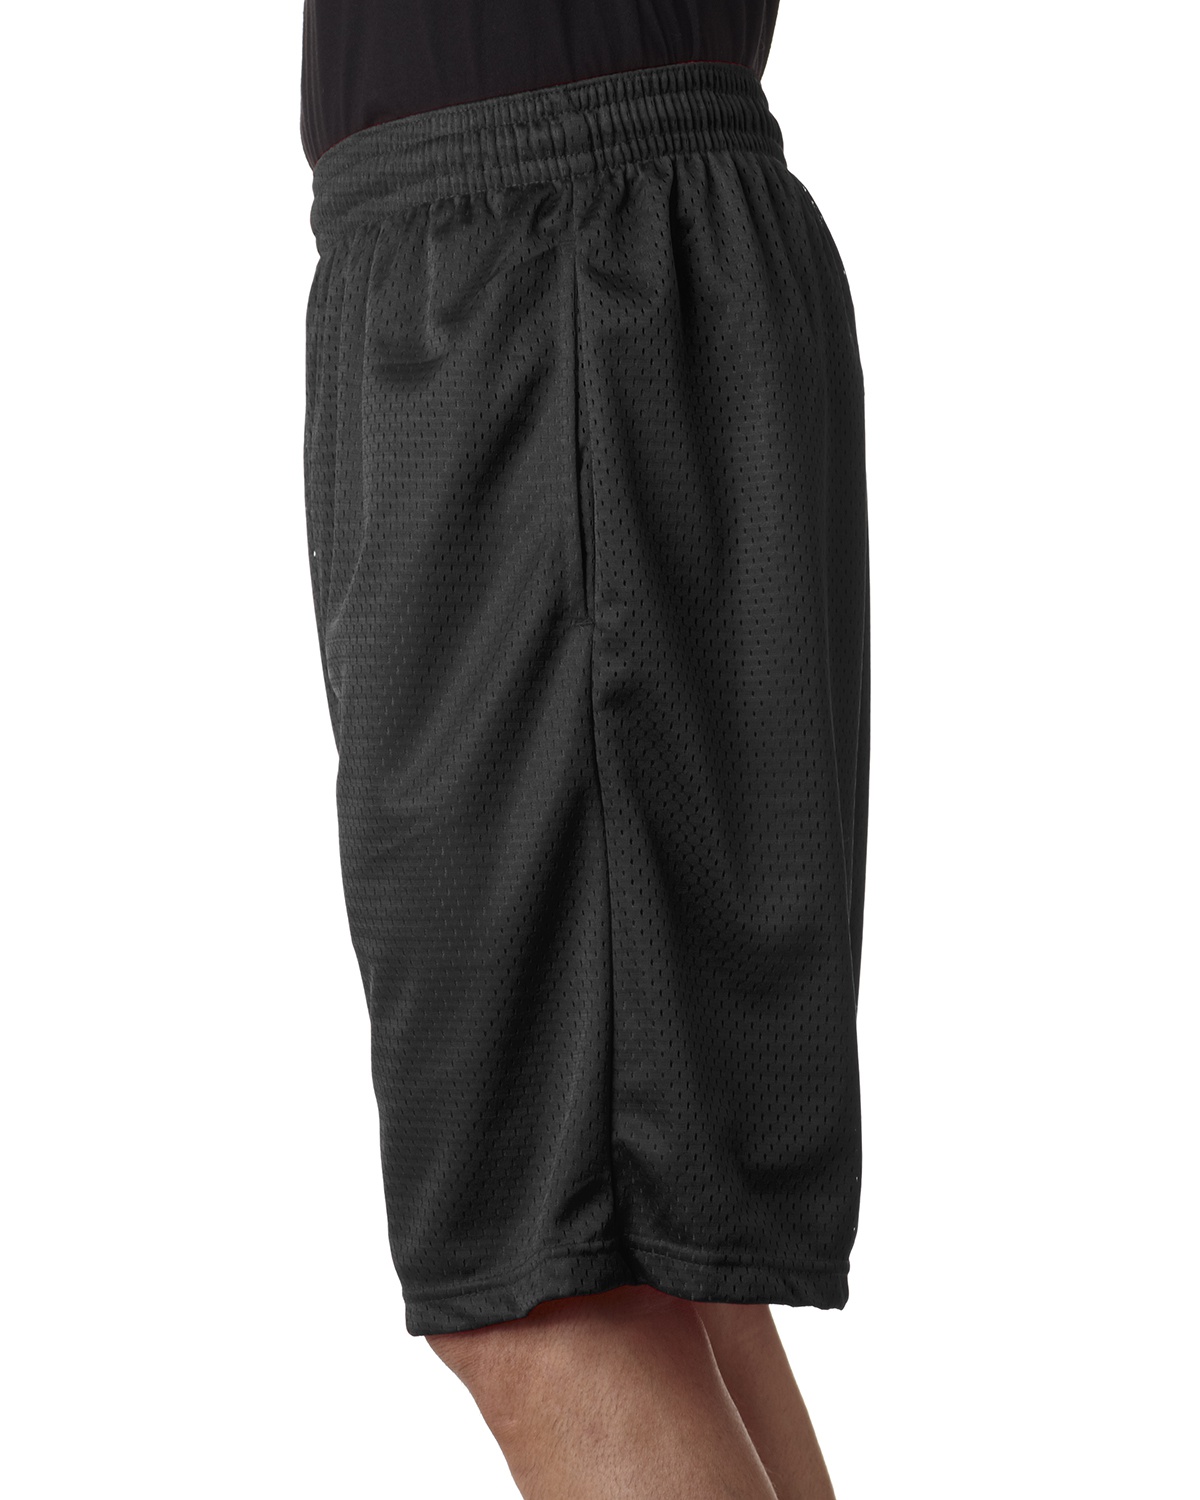 Badger 7219 Pro Mesh 9 Inseam Pocketed Shorts-Veetrends.com